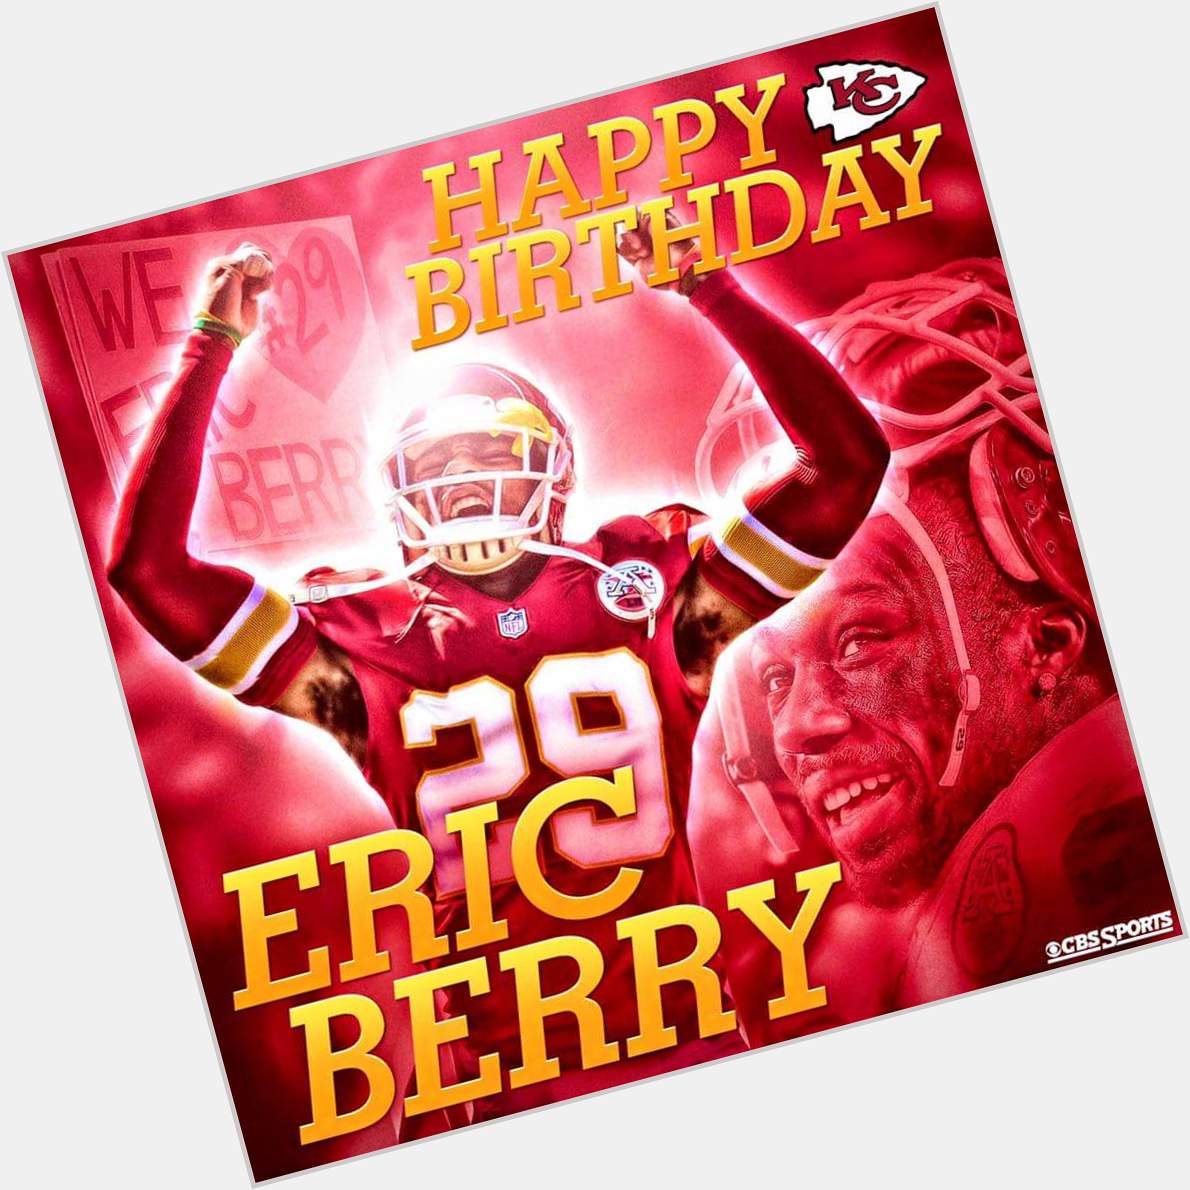 Happy Birthday Eric Berry!  